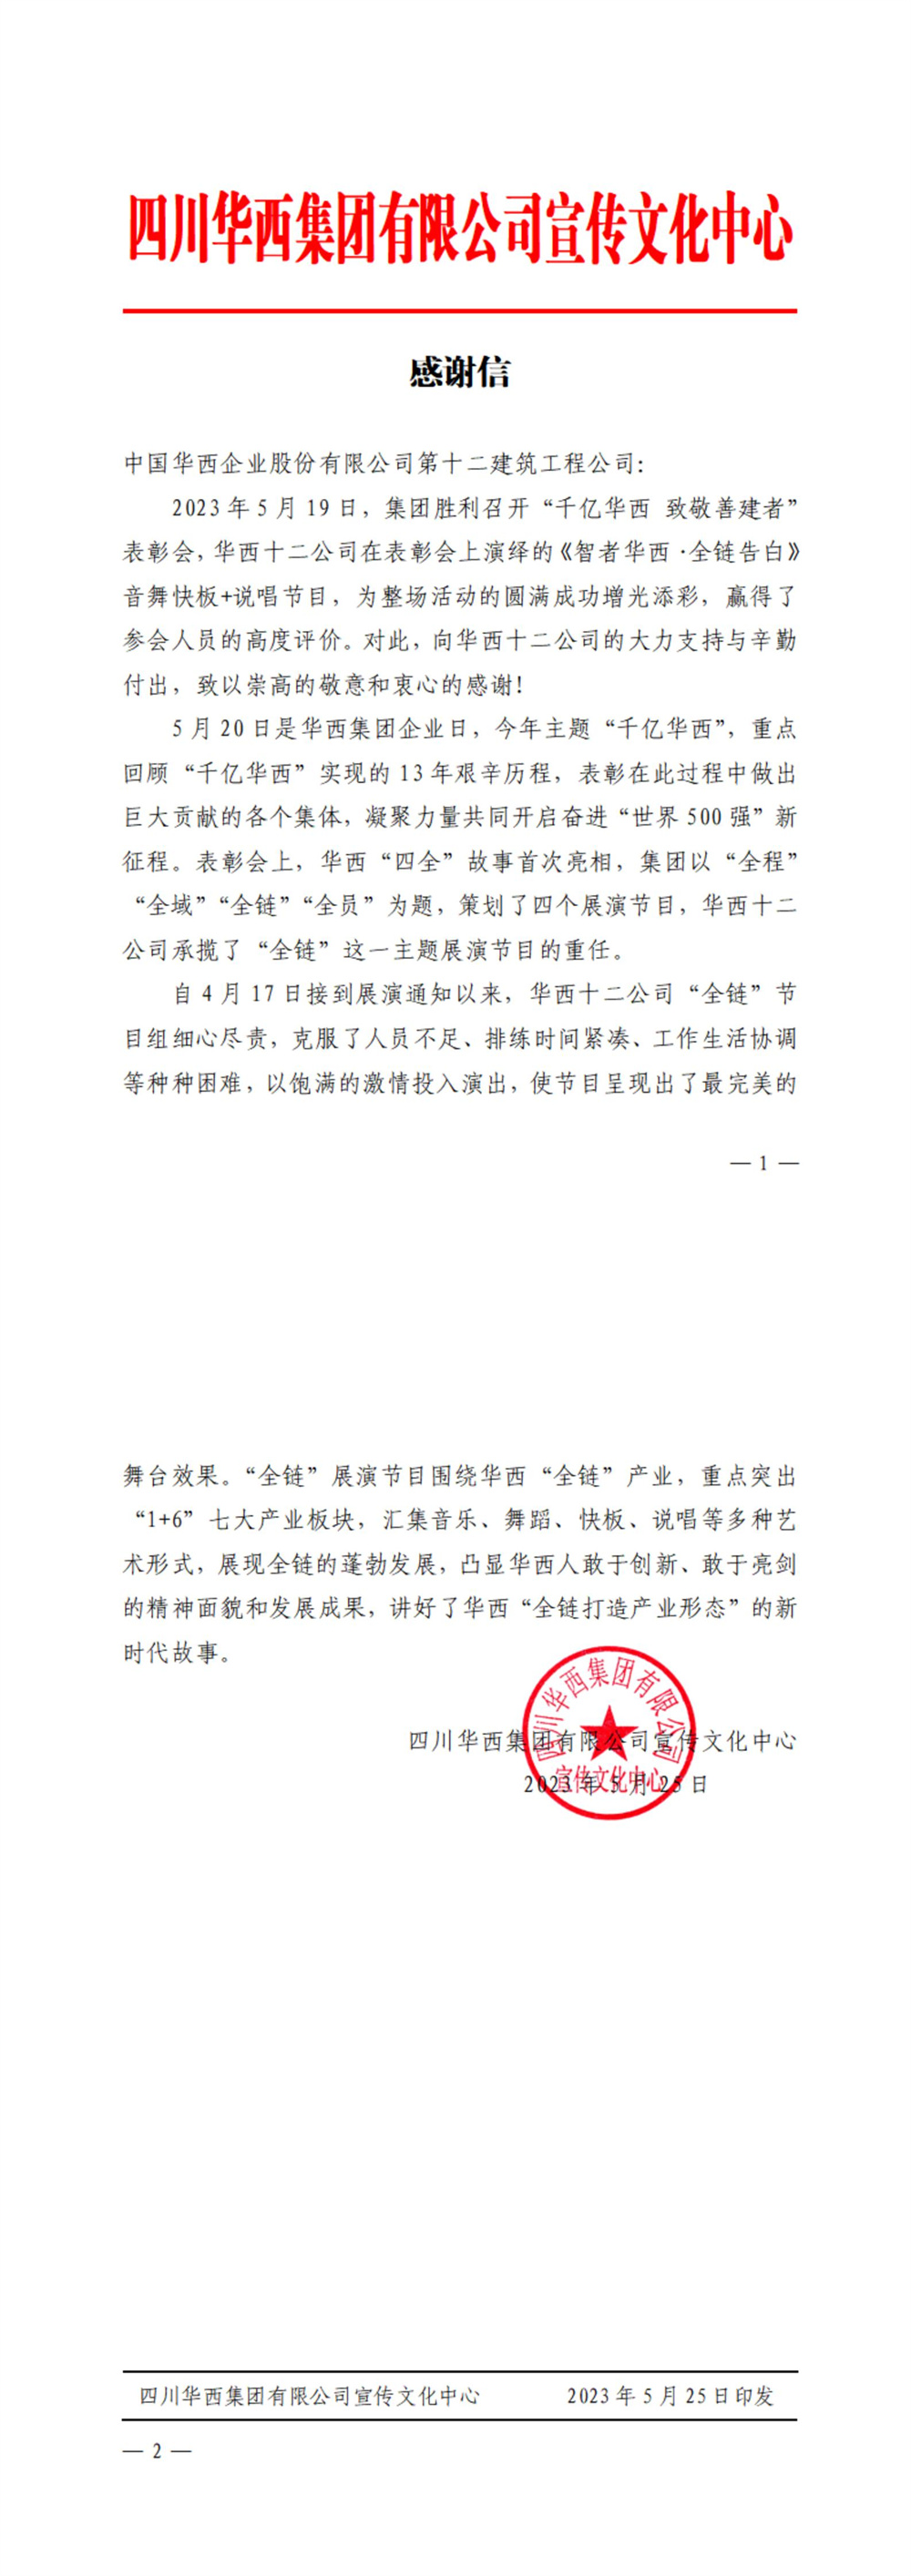 J9九游会官方网站十二公司收到集团宣传文化中心发来的感谢信(图1)